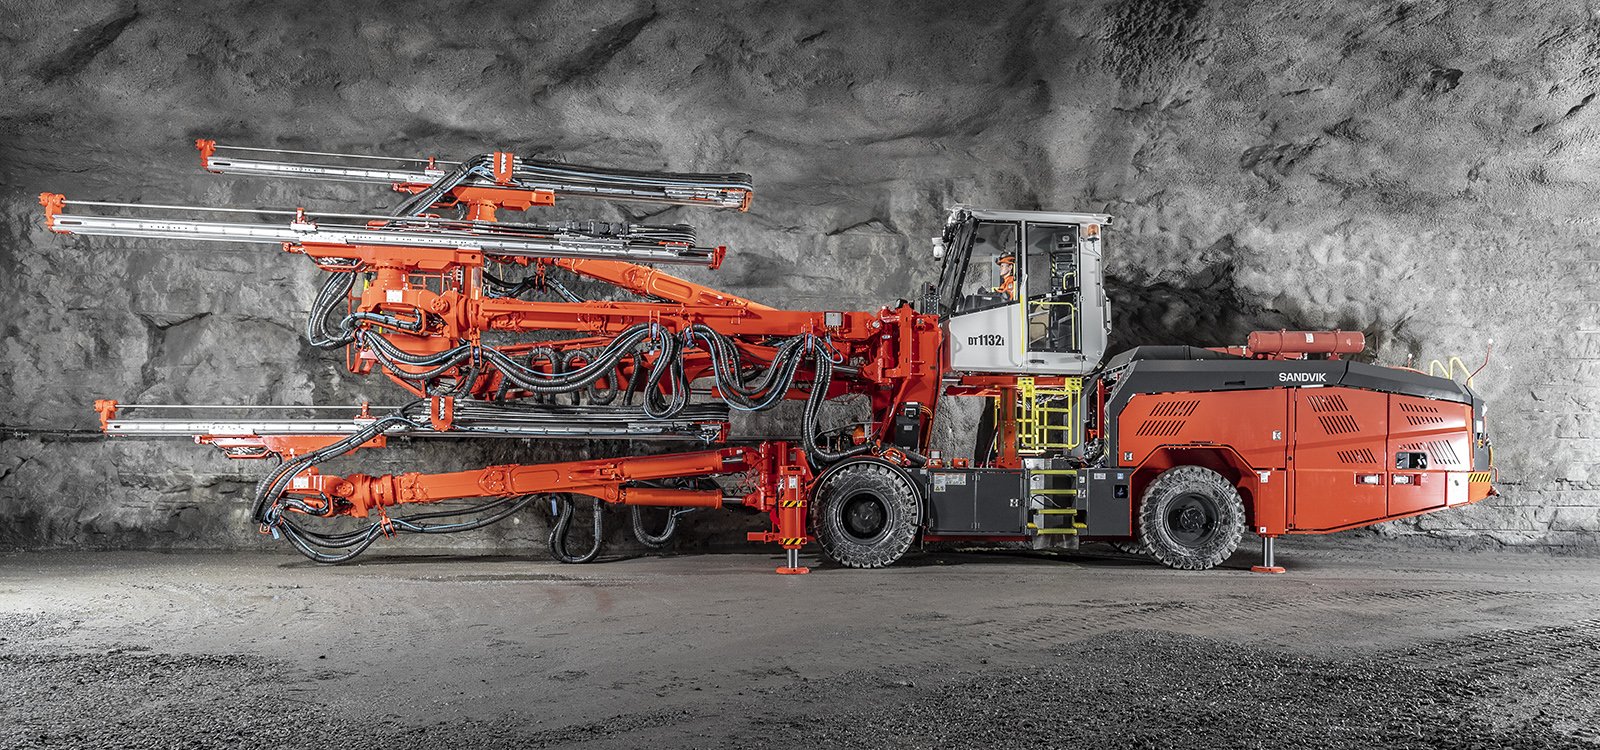 山特维克DT1132i适用于多种隧道钻孔和其他地下作业场合。